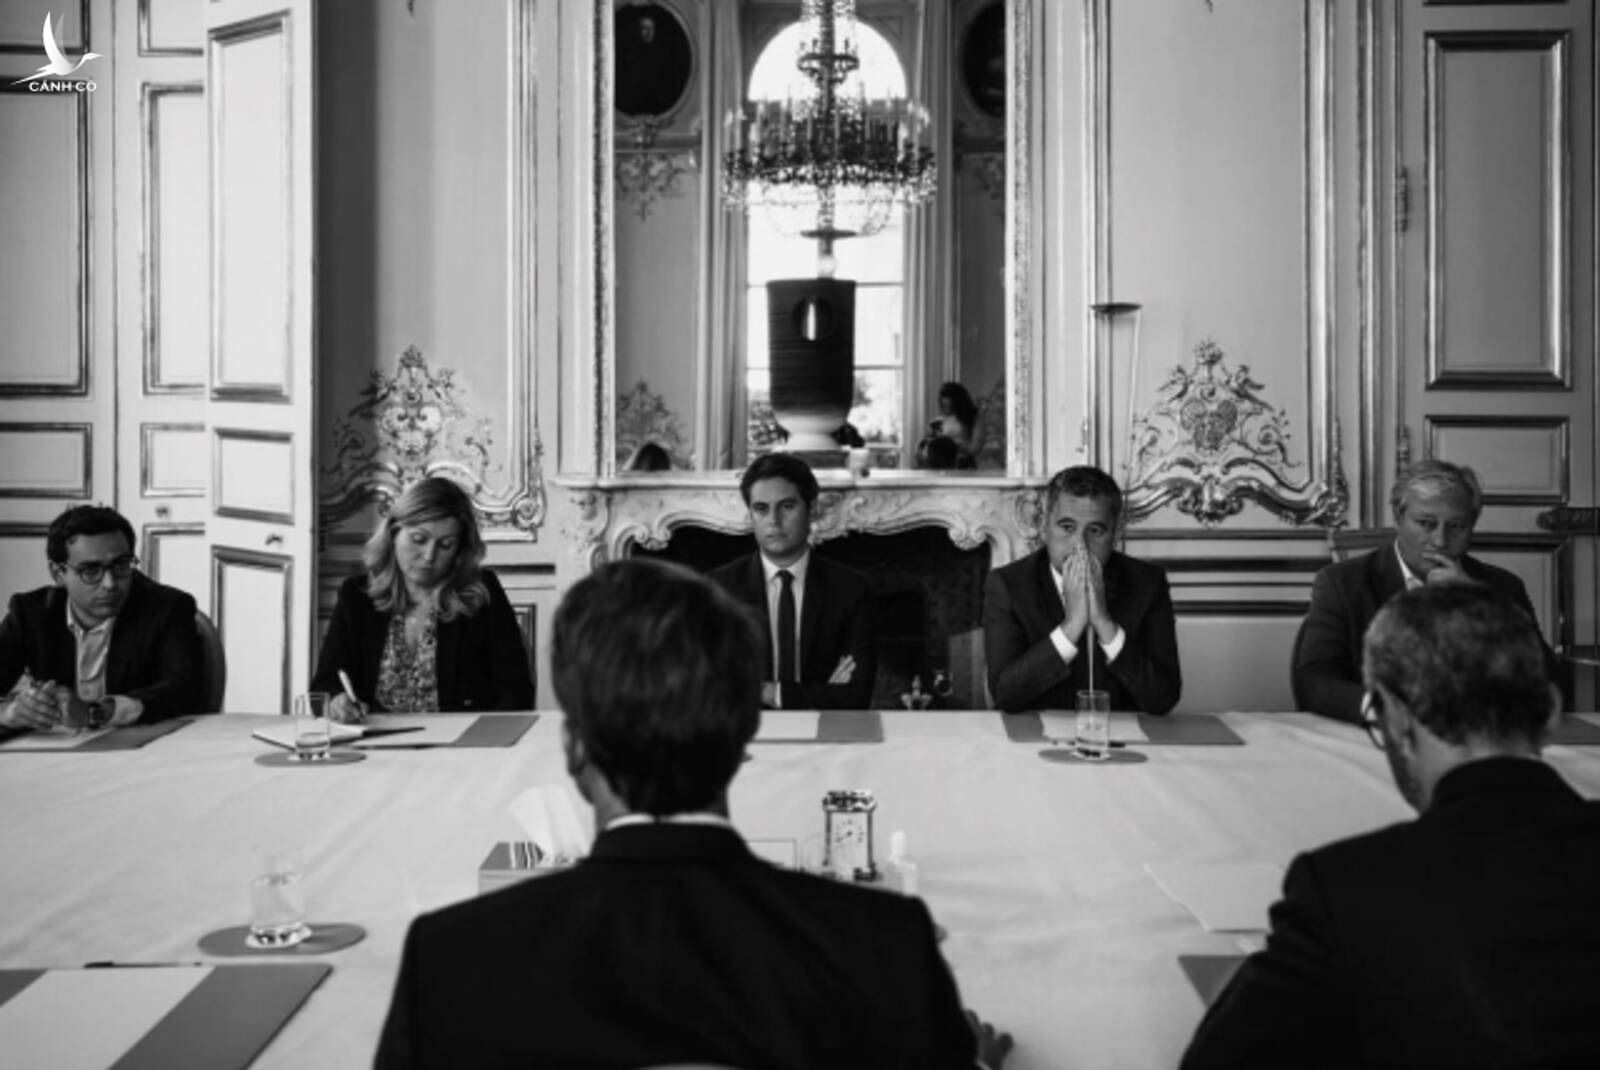 Cuộc họp của Tổng thống Pháp Emmanuel Macron với nội các tại Điện Elysee ngày 9/6.